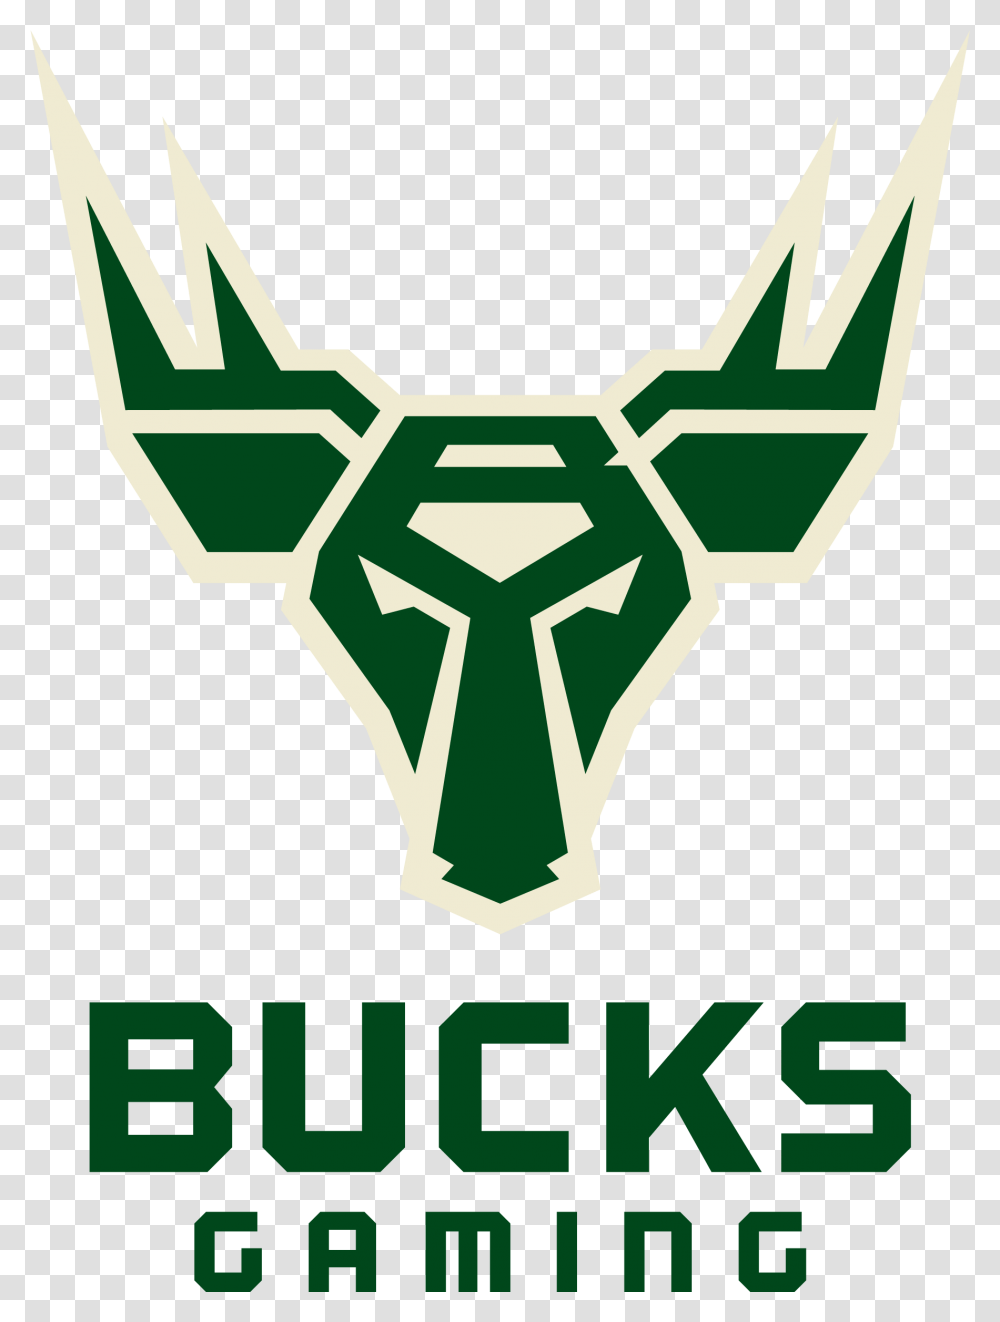 Download Bucks Gaming Logo Image Bucks Gaming Logo, Symbol, Emblem, Poster, Advertisement Transparent Png